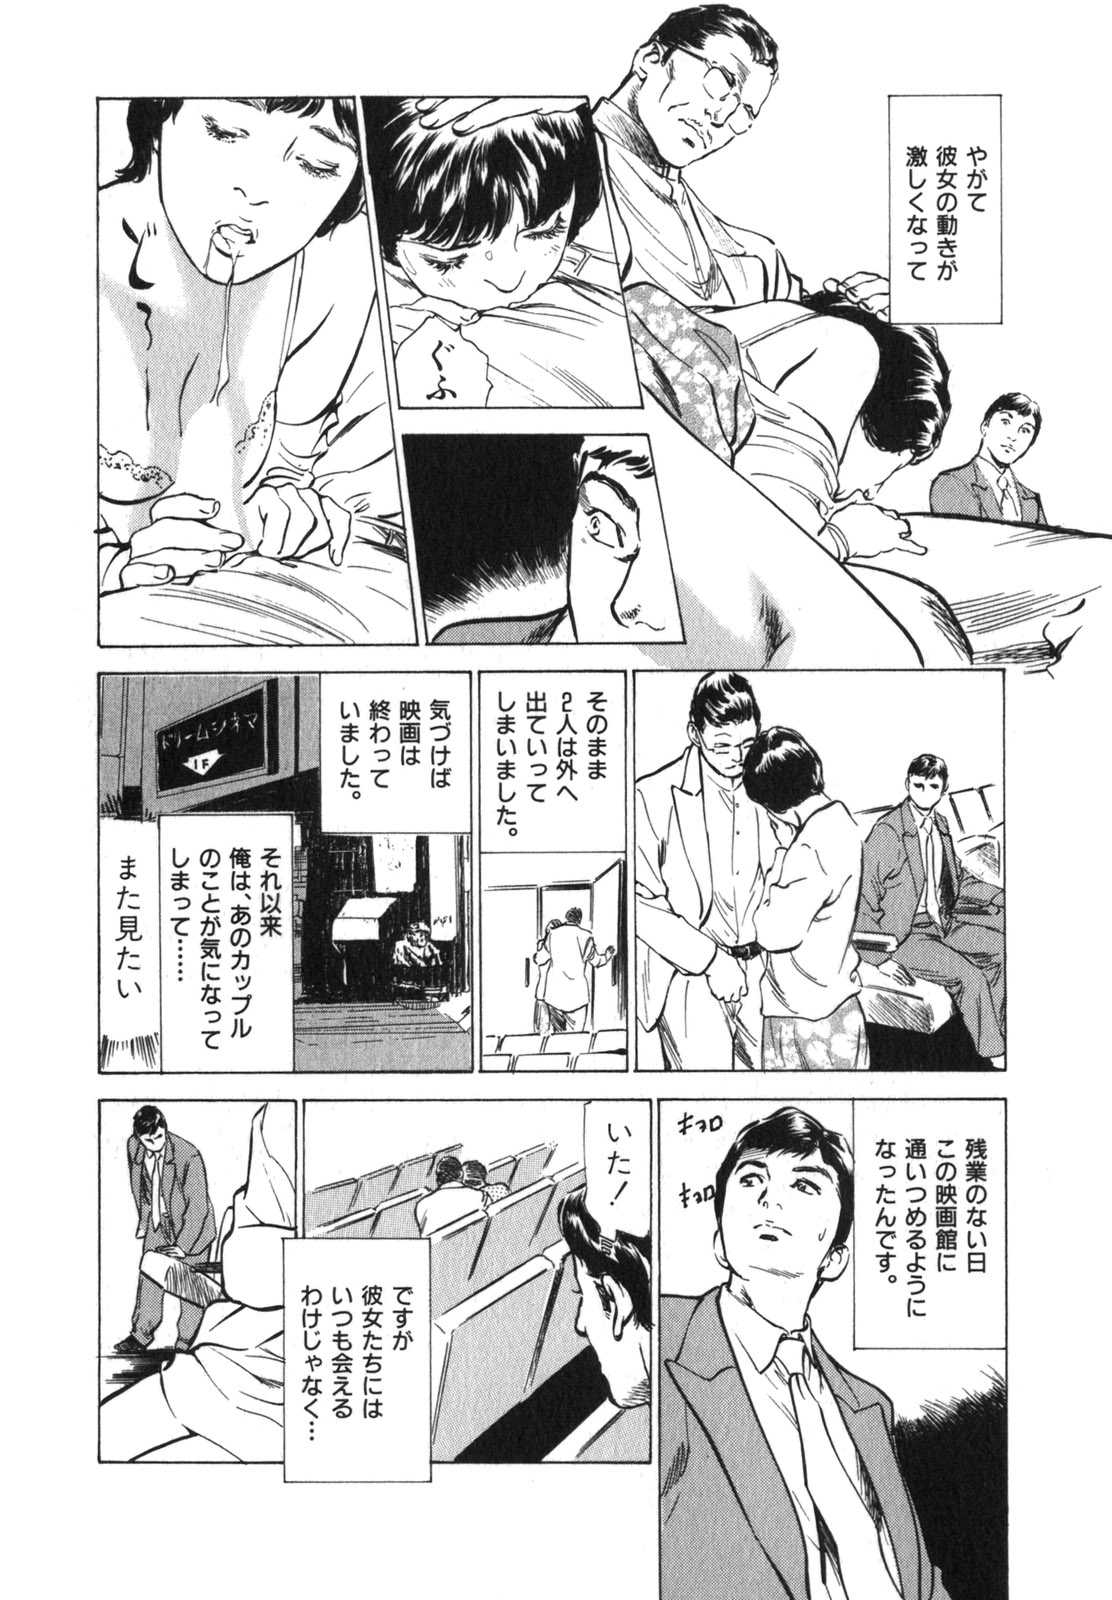 true Stories of Erotic Experiences 3 [Hazuki Kaoru] (J) 